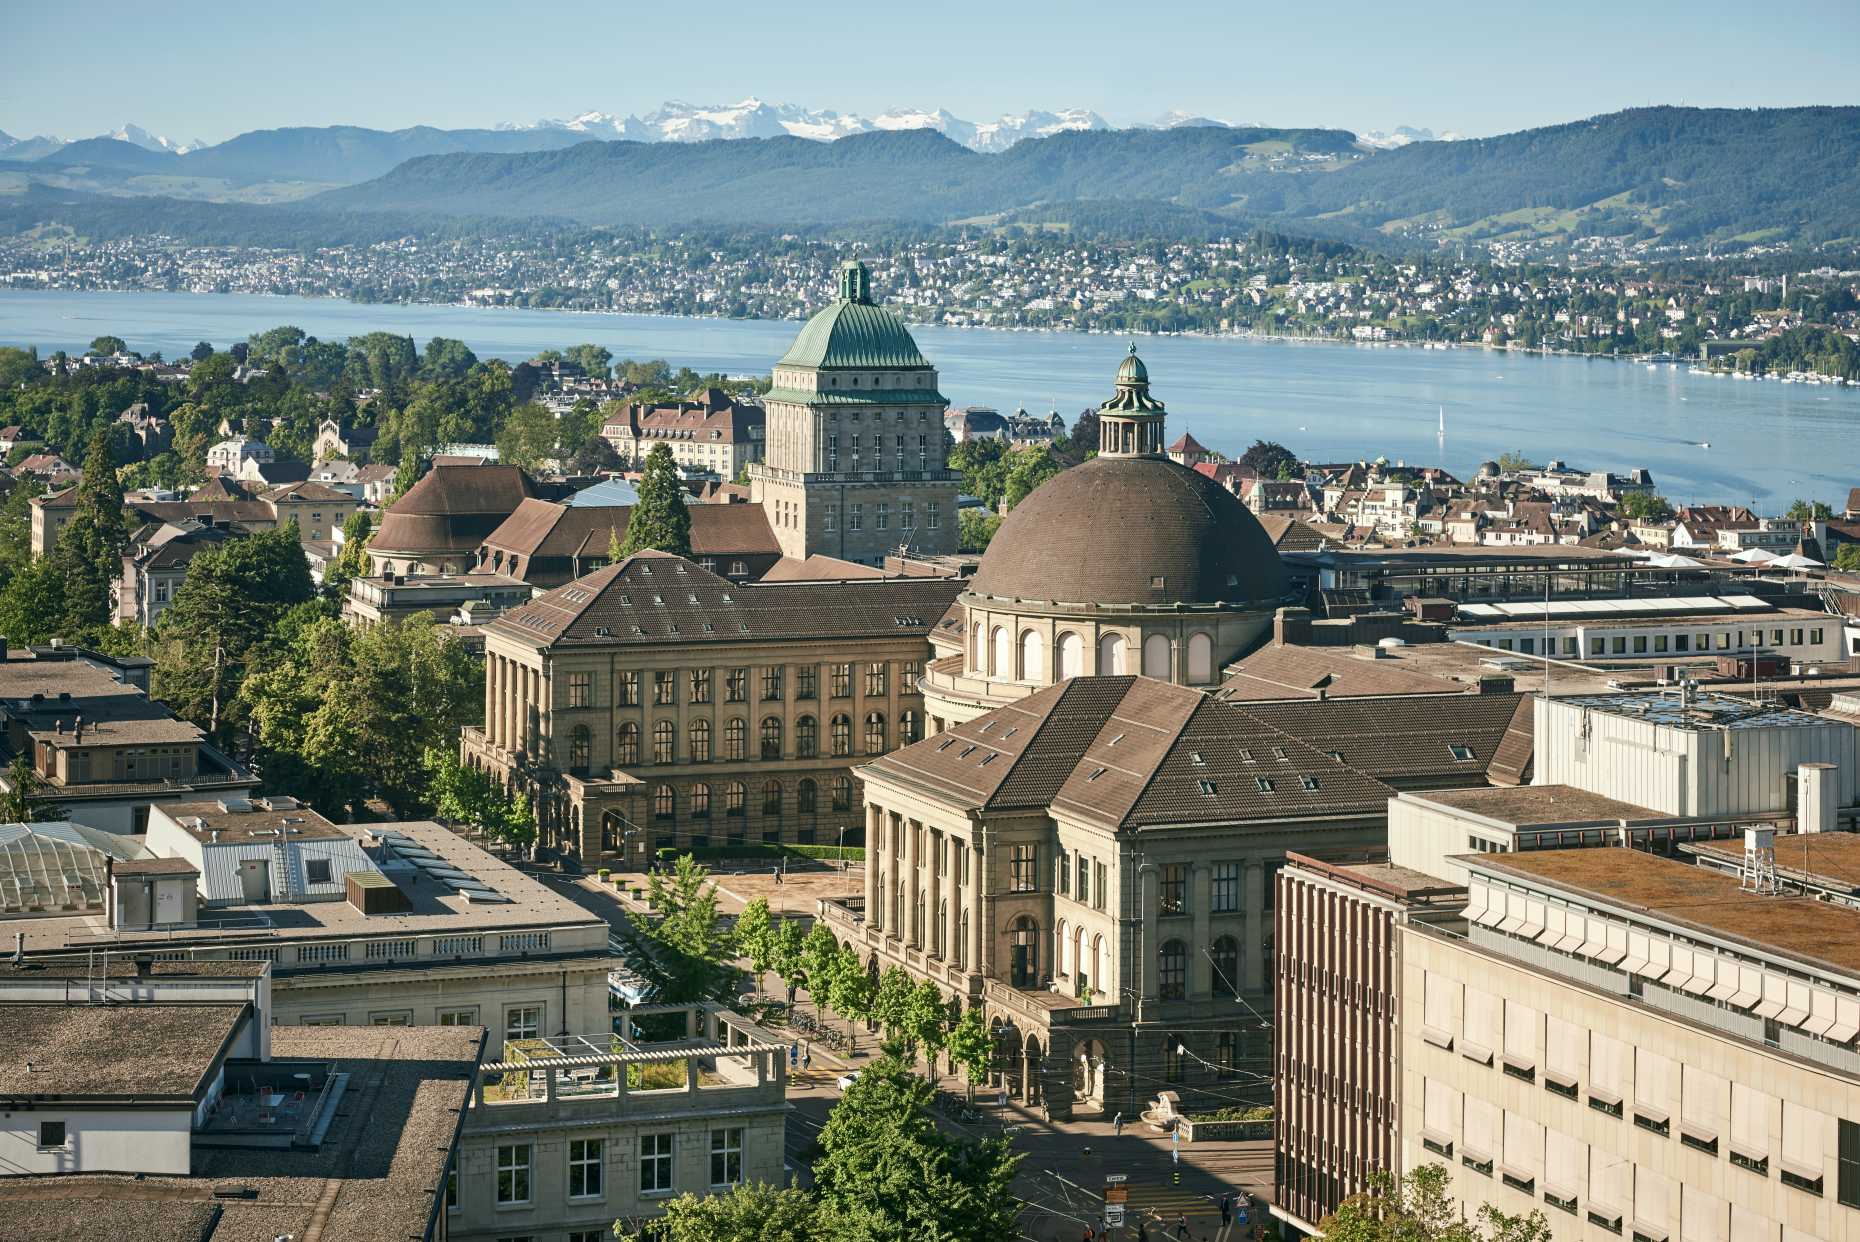 ETH Zurich campus in the center of Zurich